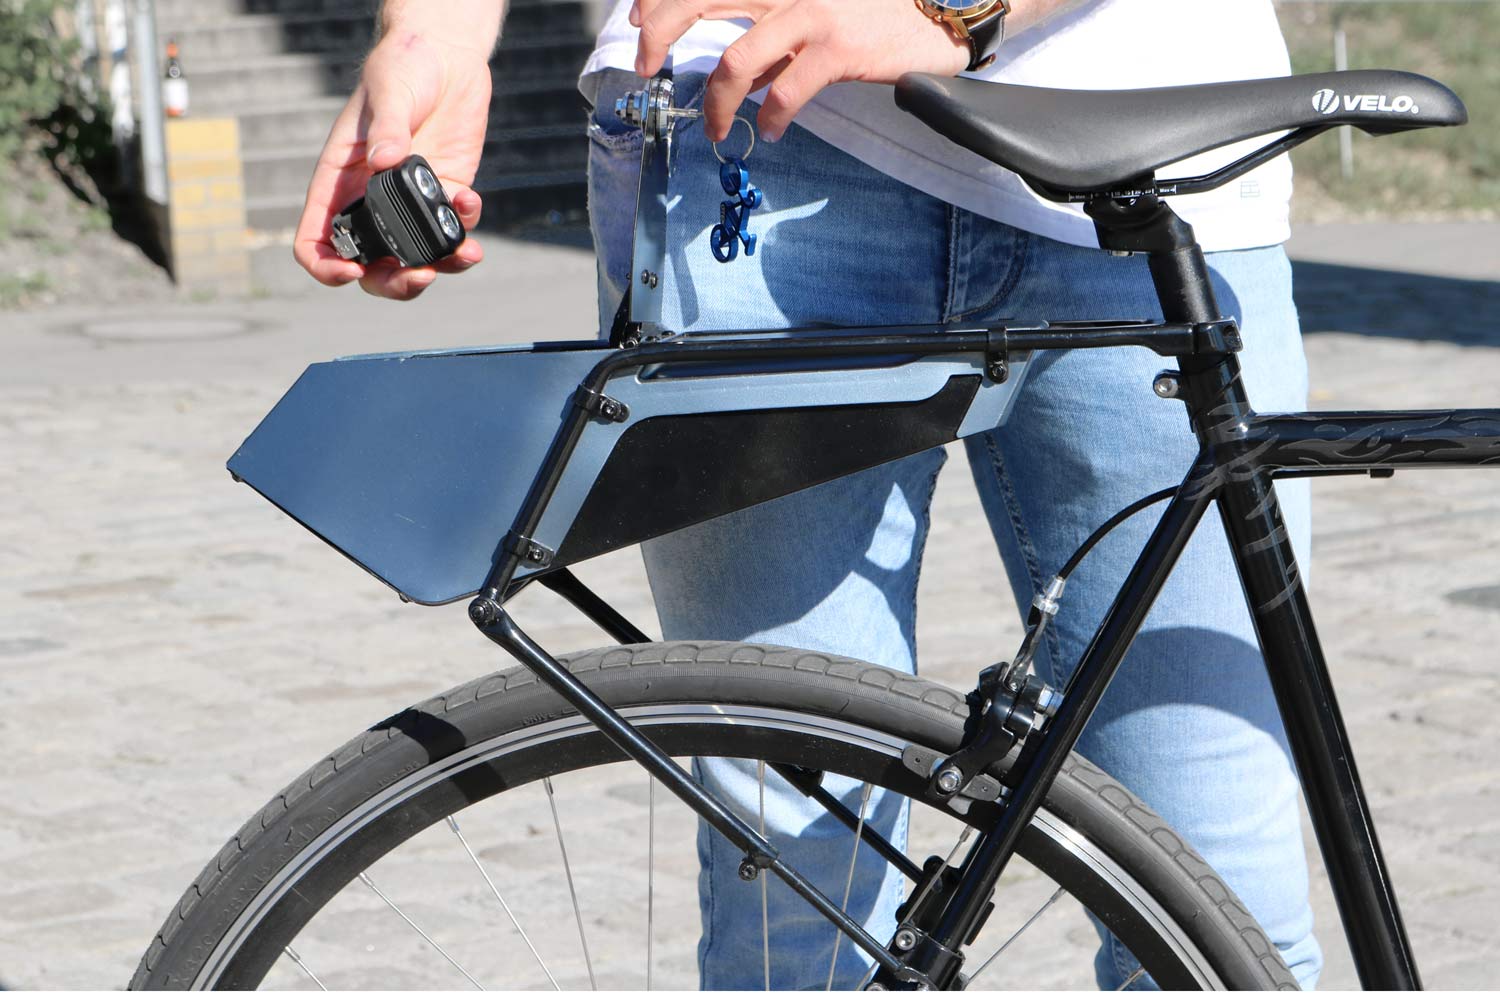 Otek Bicycles Aerocarrier lockable bicycle trunk,semi secure on bike glovebox and pannier rack